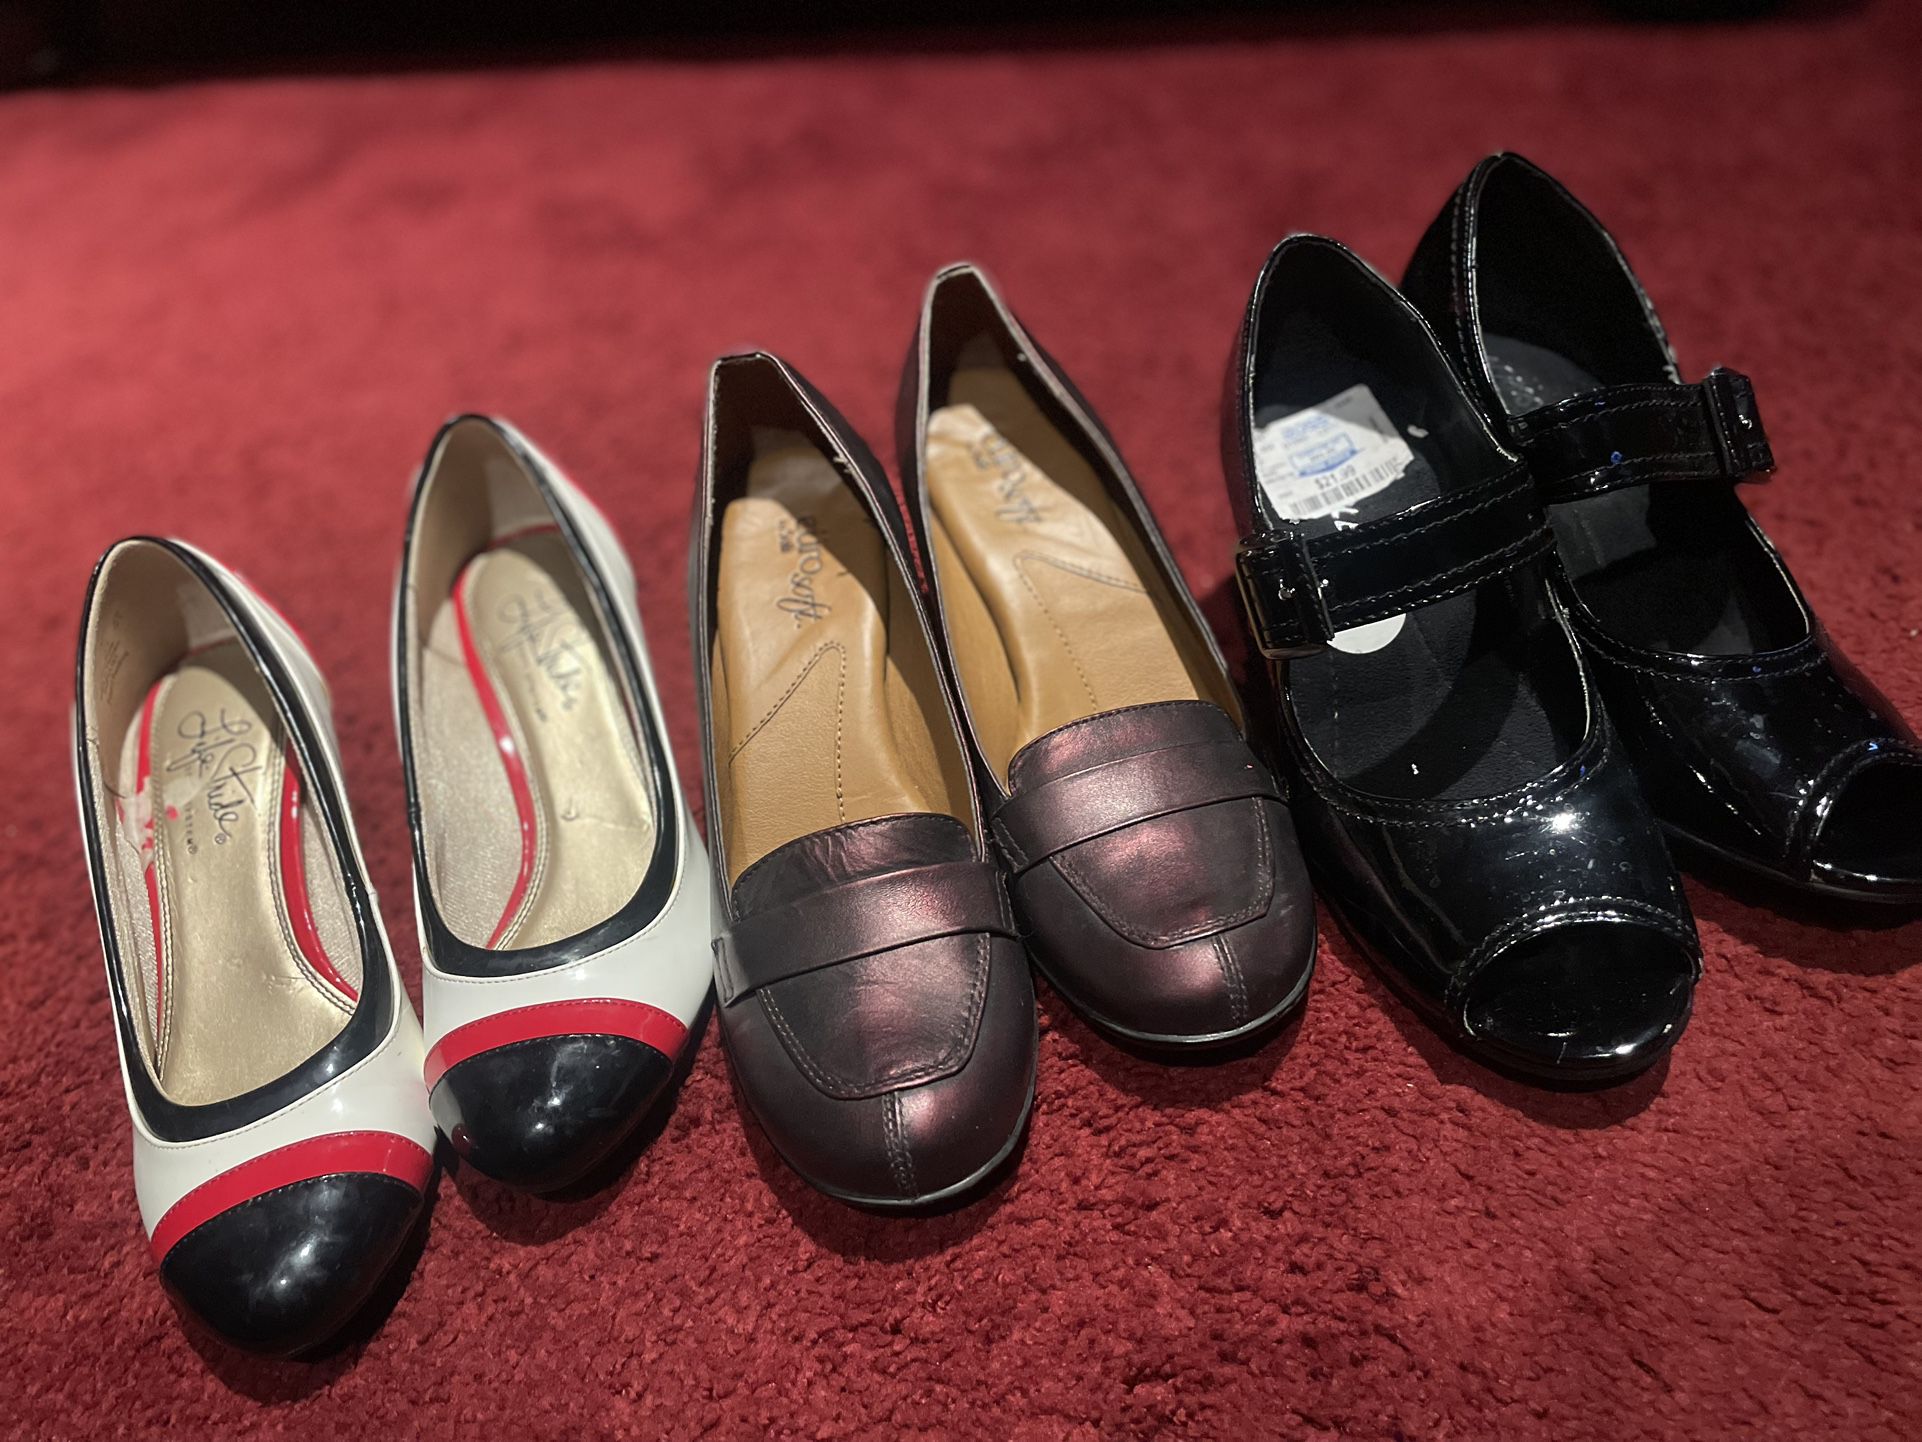 Ladies Like New Heels, Three Pairs $45